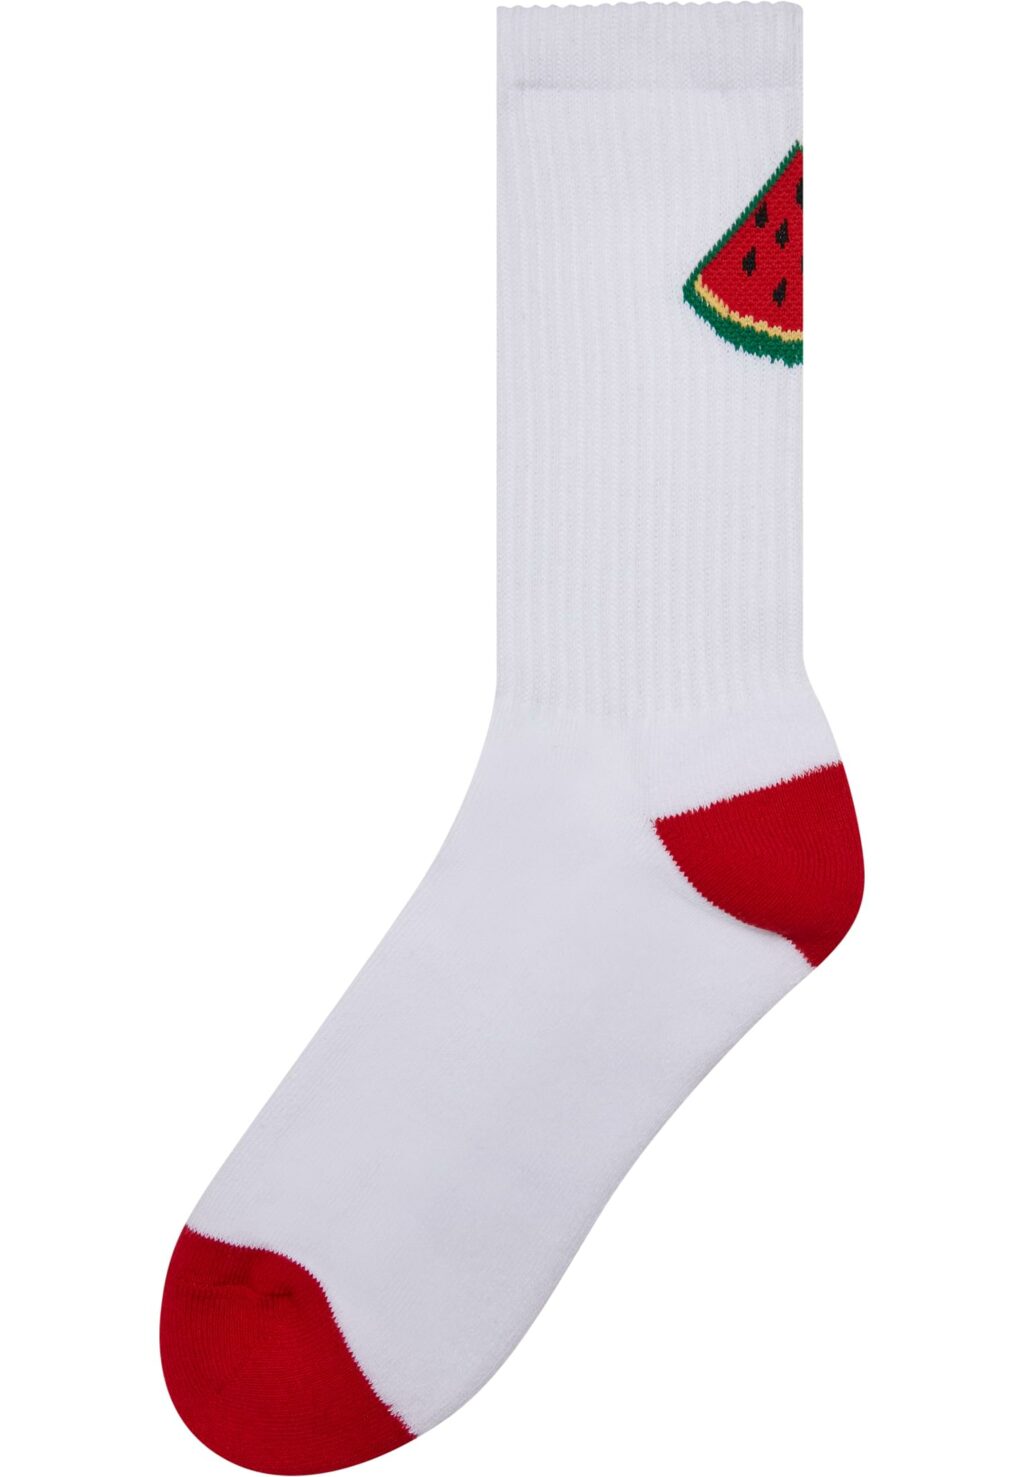 Fancy Fruit Socks 3-Pack white/multicolor MT2257